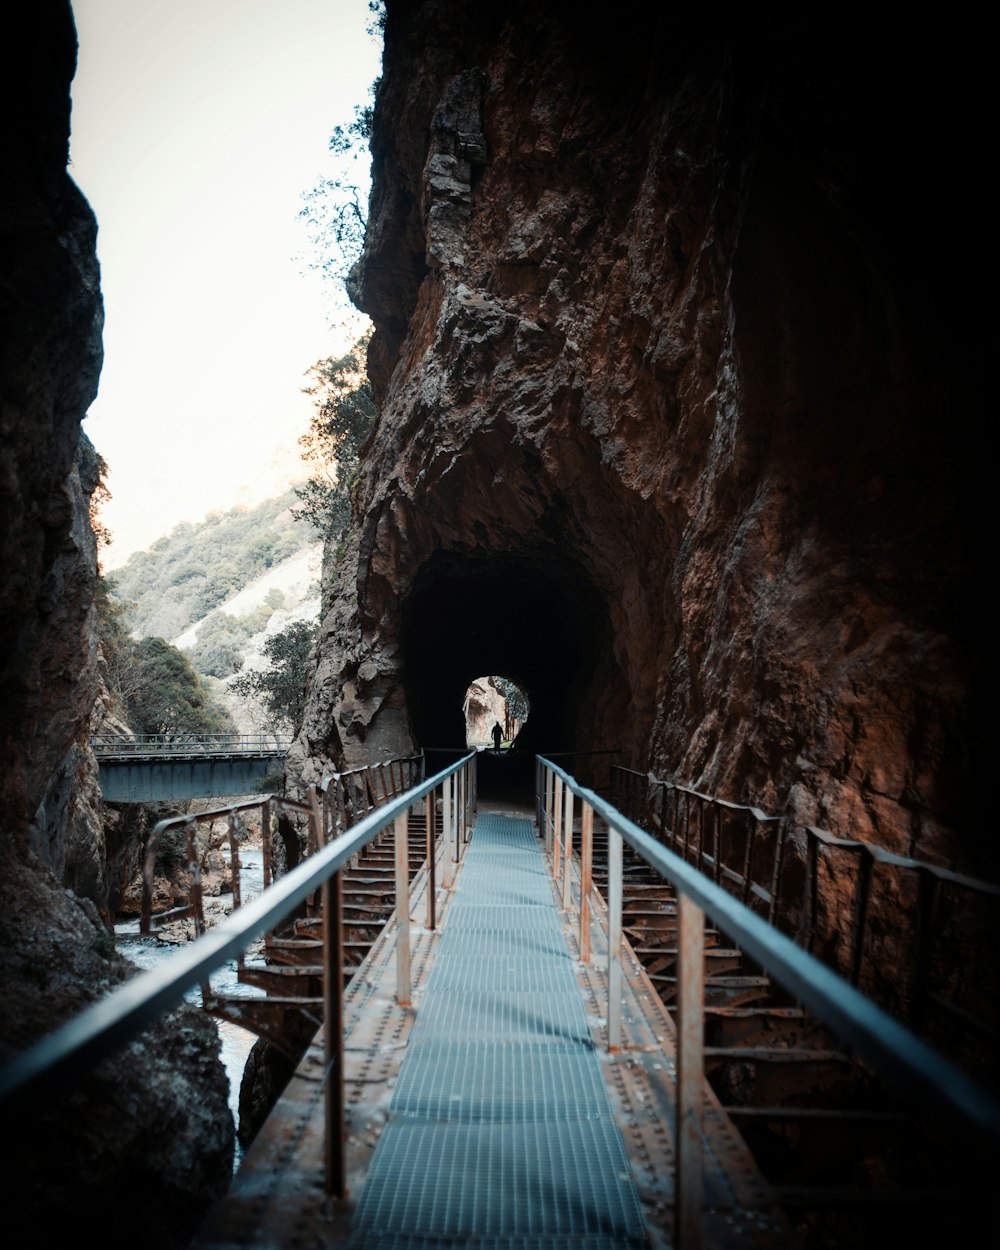 a staircase going through a cave